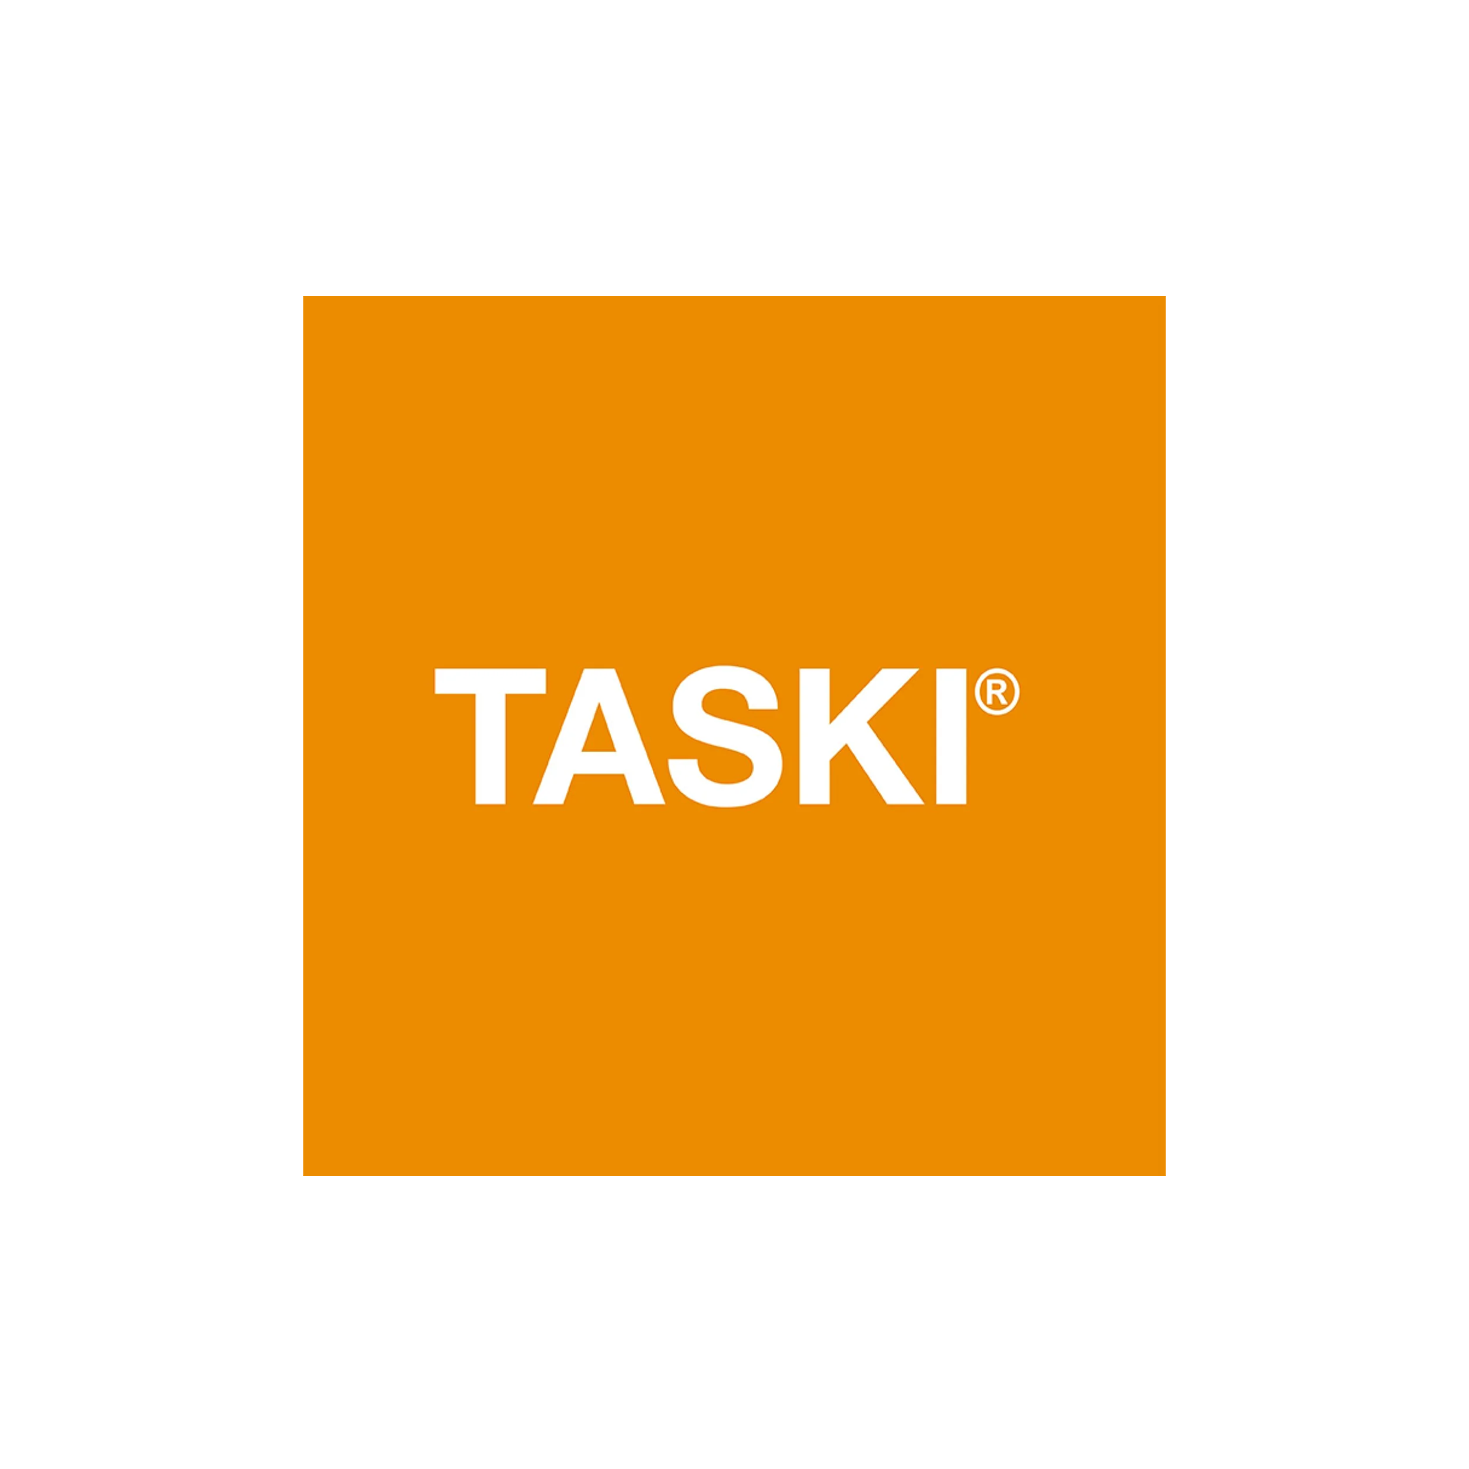 Taski Sani 4 in 1 Plus Spray fürdőszobai tisztító-, fertőtlenítőszer és vízkőoldó illatosító hatással, 750 ml